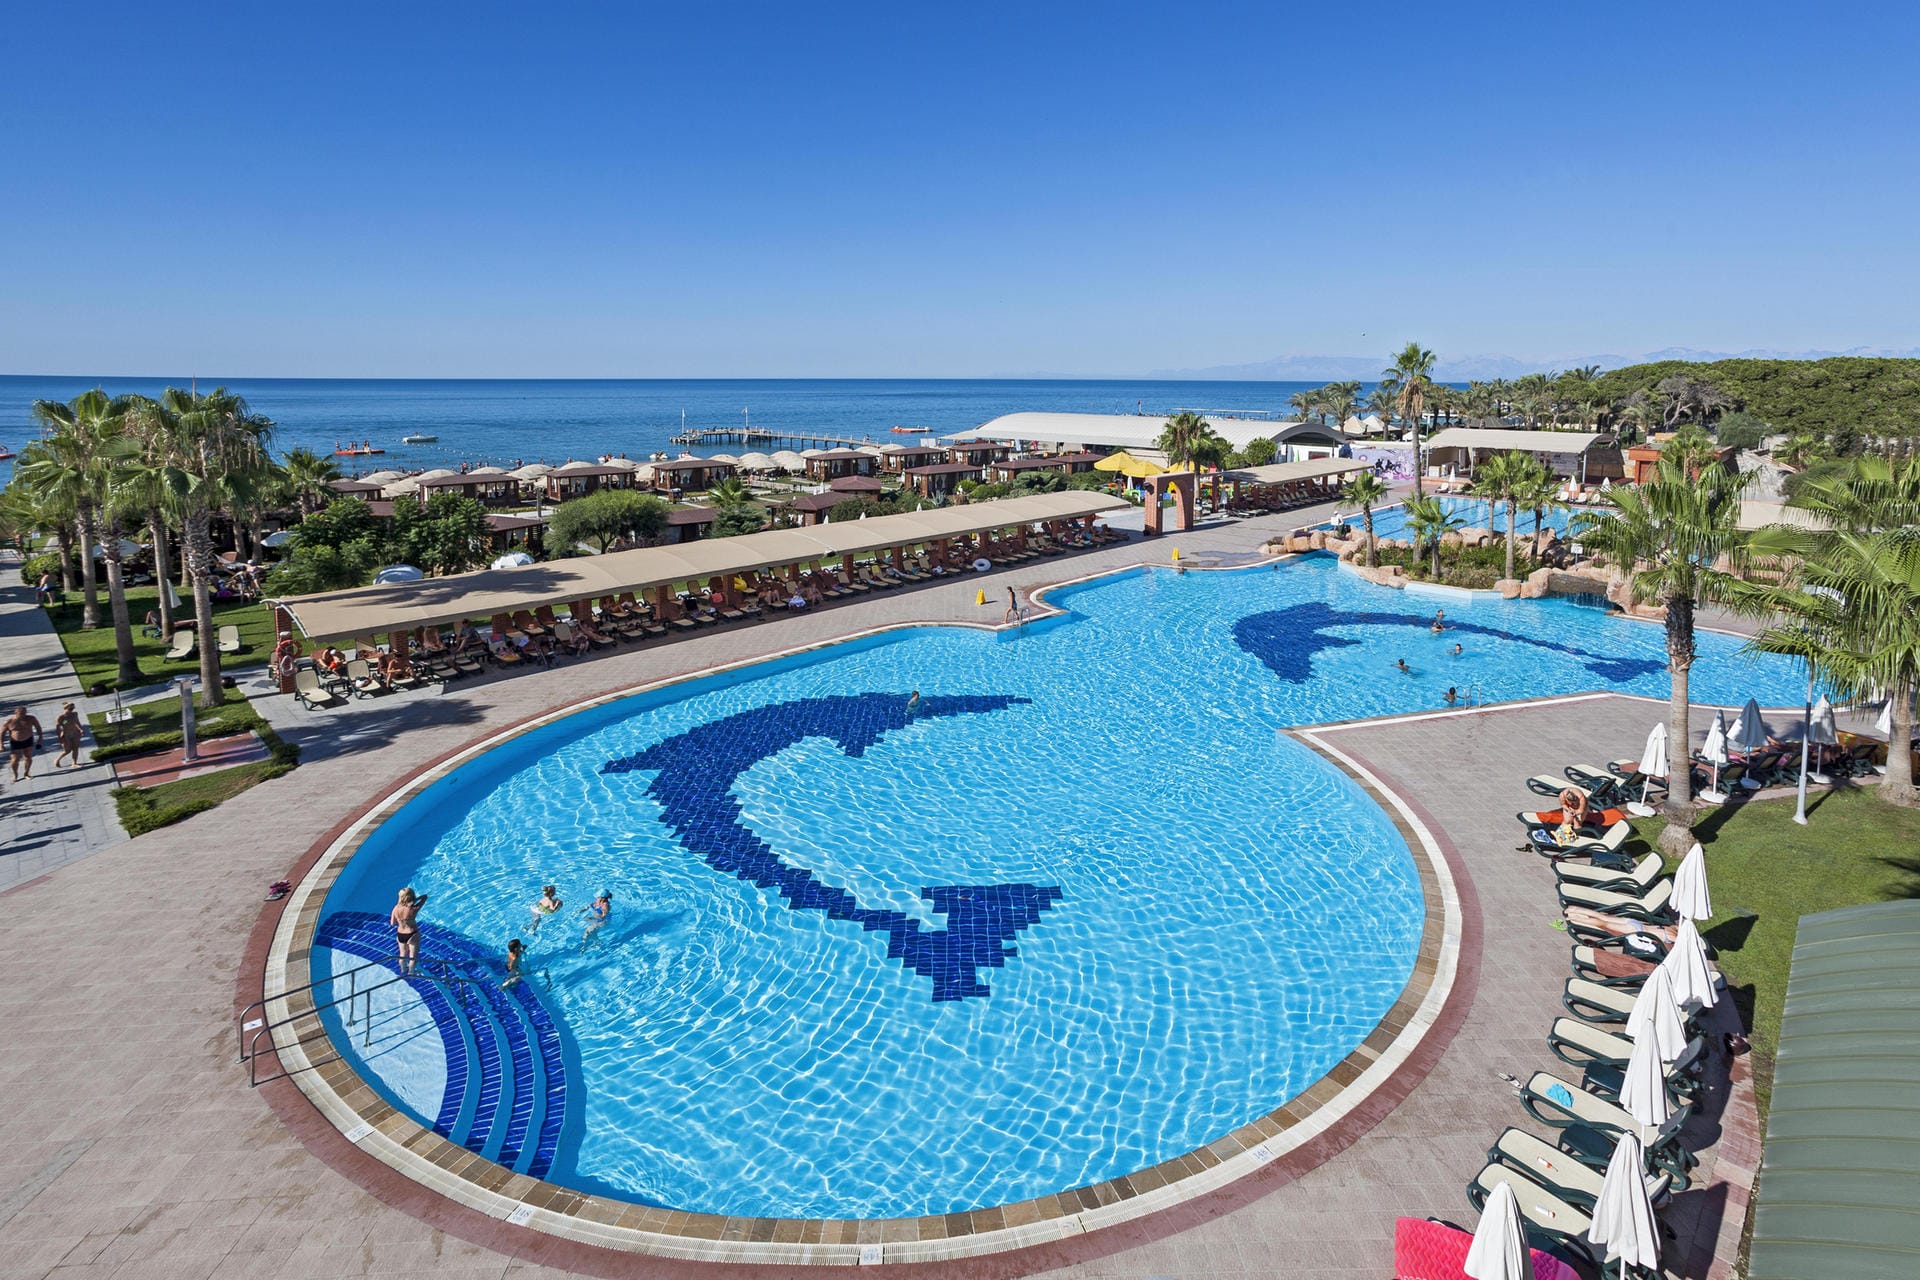 Auch Calimera, die Ferienclubkette von DER Touristik, bekommt 2017 Zuwachs. Rechtzeitig zur Sommersaison öffnet der Fünfsterneclub Calimera Pine Beach in Belek in der Türkei seine Pforten.